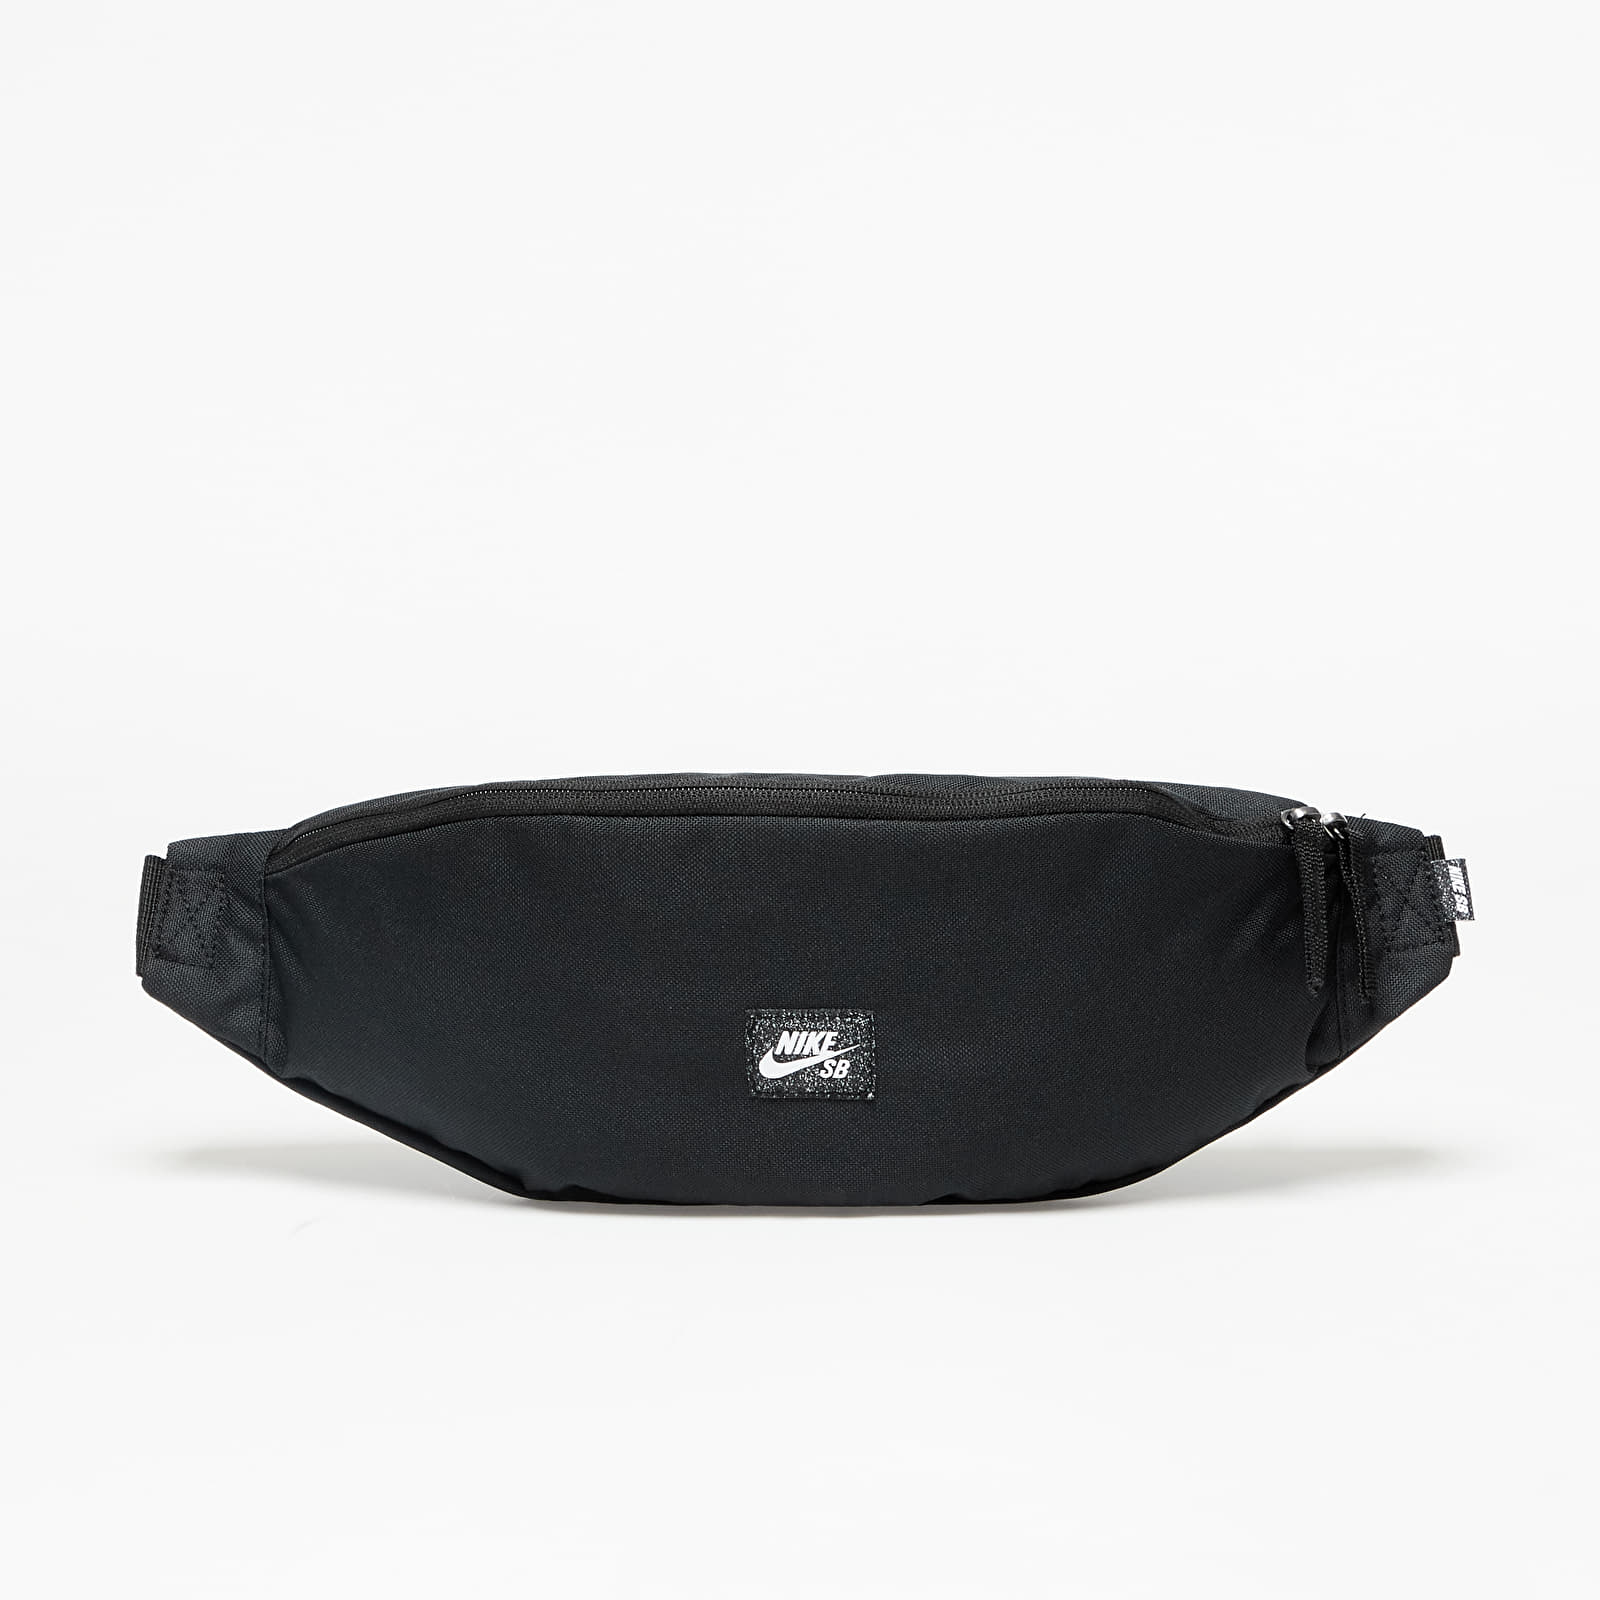 Хип чанти Nike SB Skate Waistpack Black/ Black/ White 811153